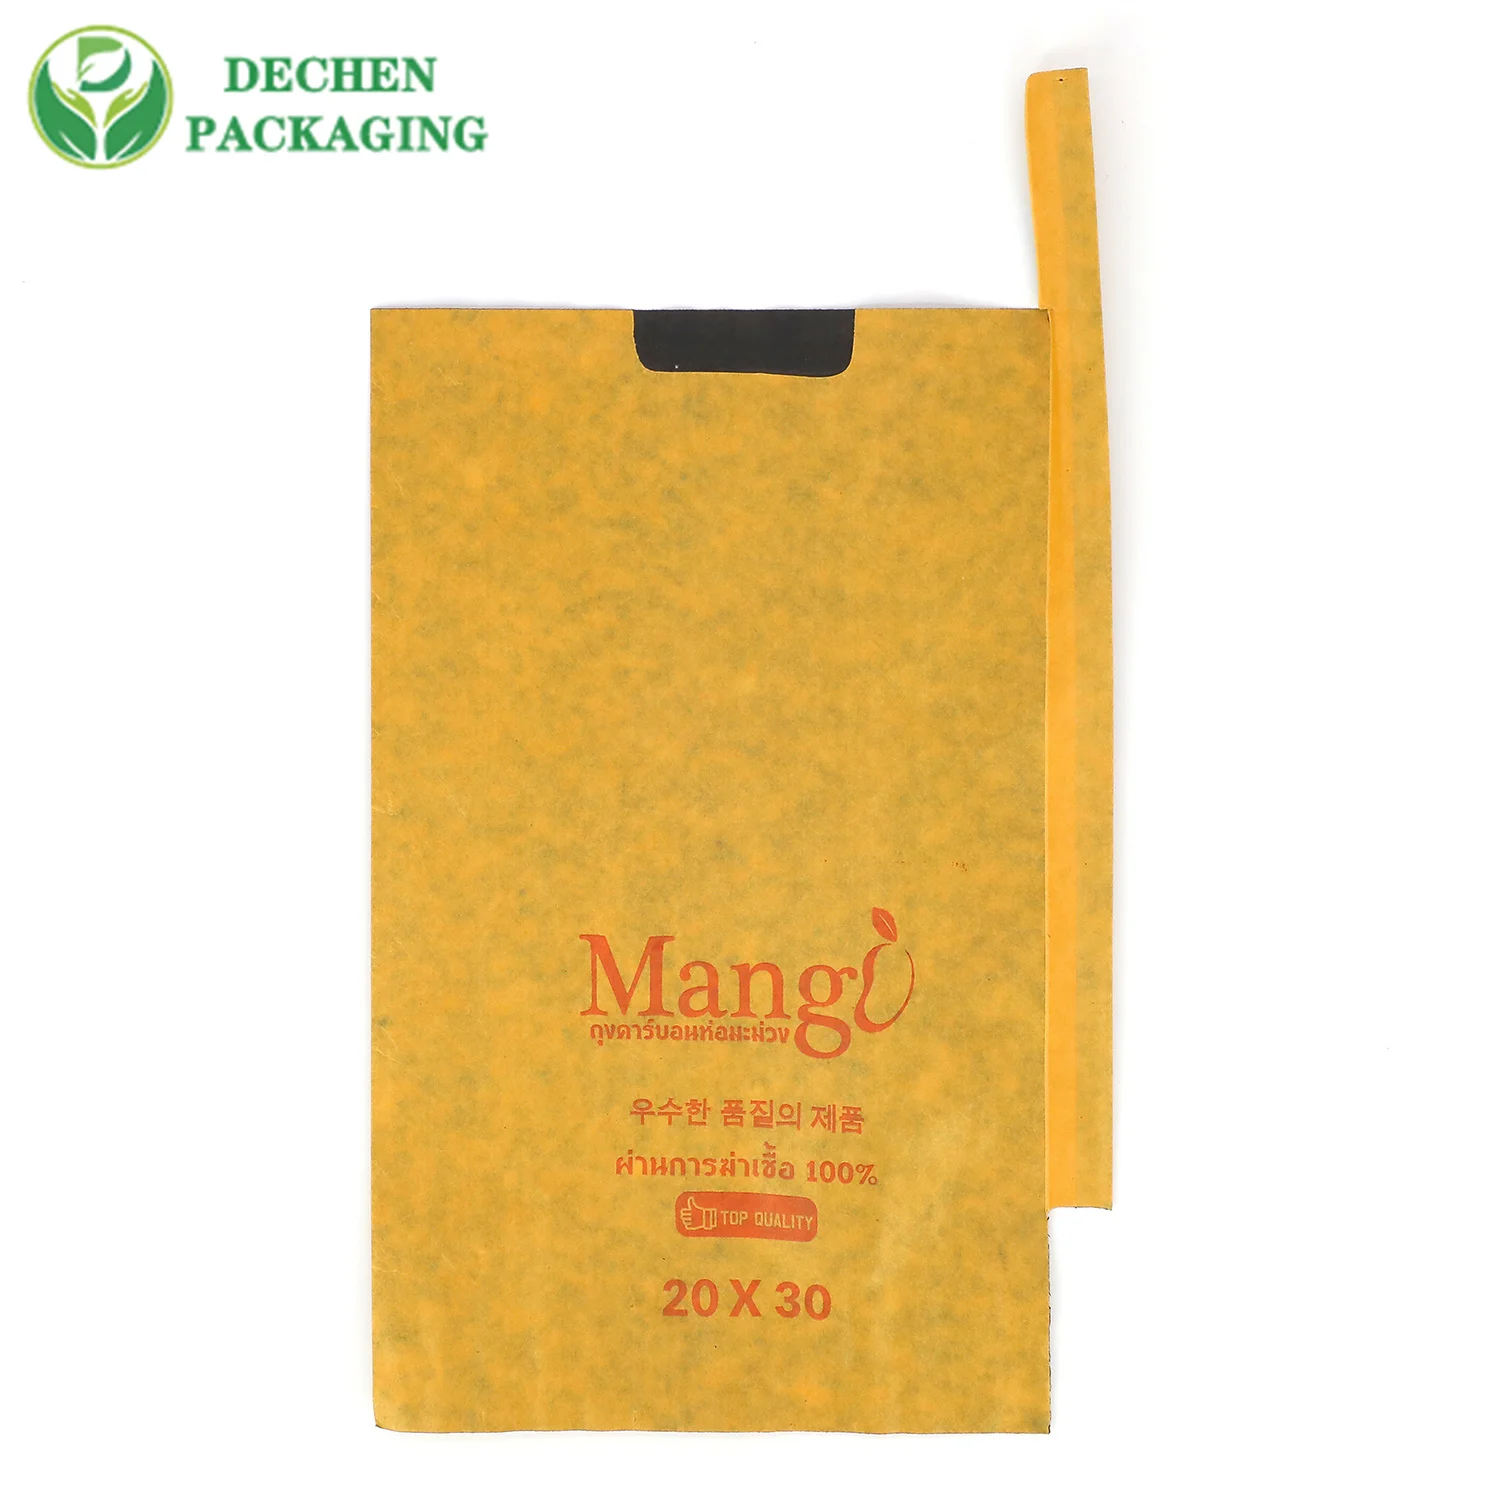 Proteger para la protección de la fruta del mango en Malasia Recubierto a prueba de agua con bolsa de papel encerado